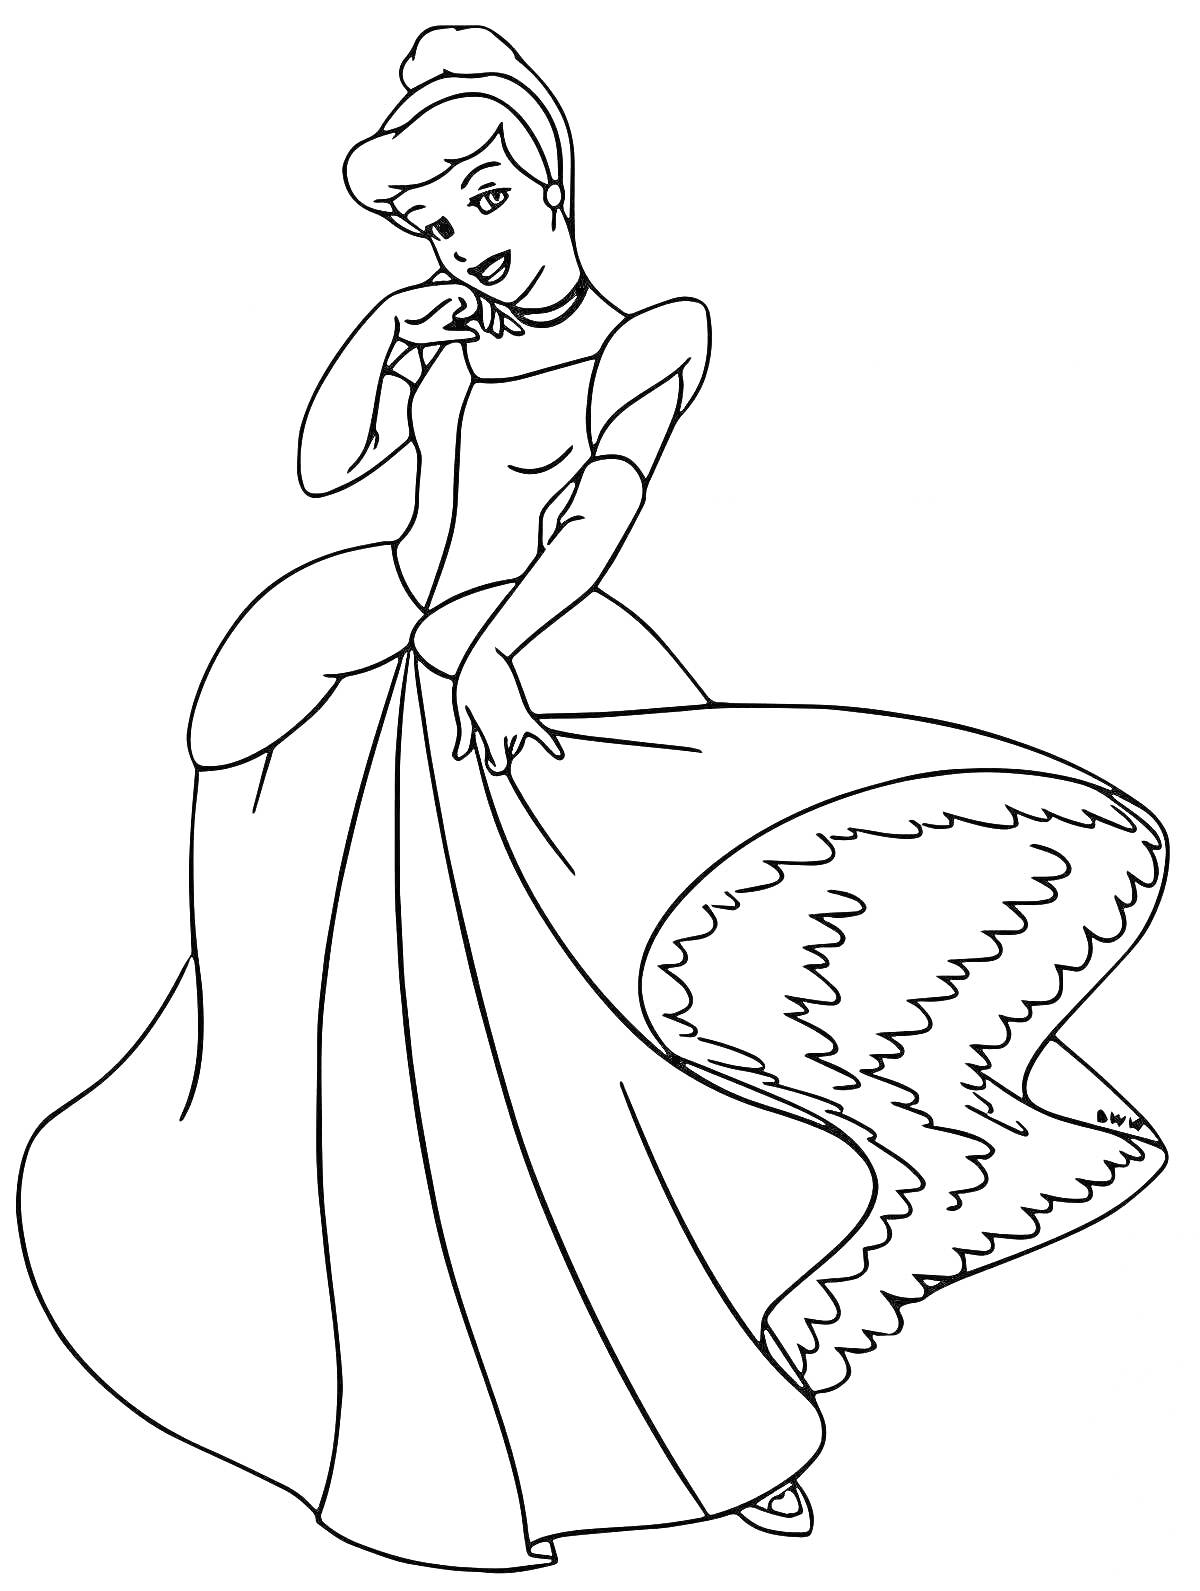 Раскраска Золушка в длинном платье с волнистым узором, сложив руки на груди и держится за юбку